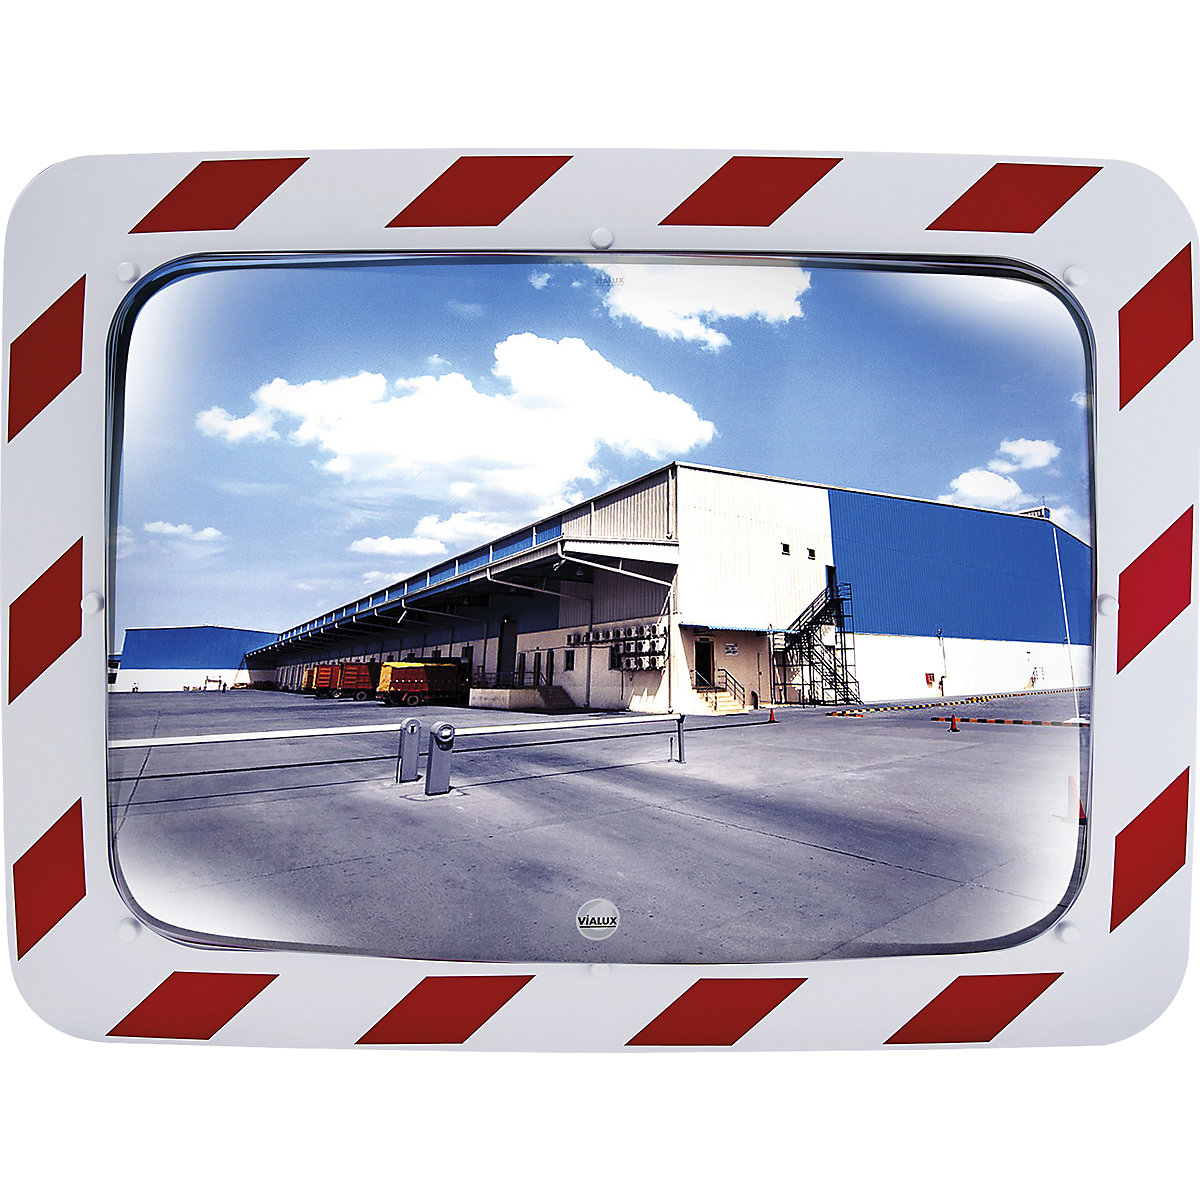 Stainless steel traffic mirror – Vialux